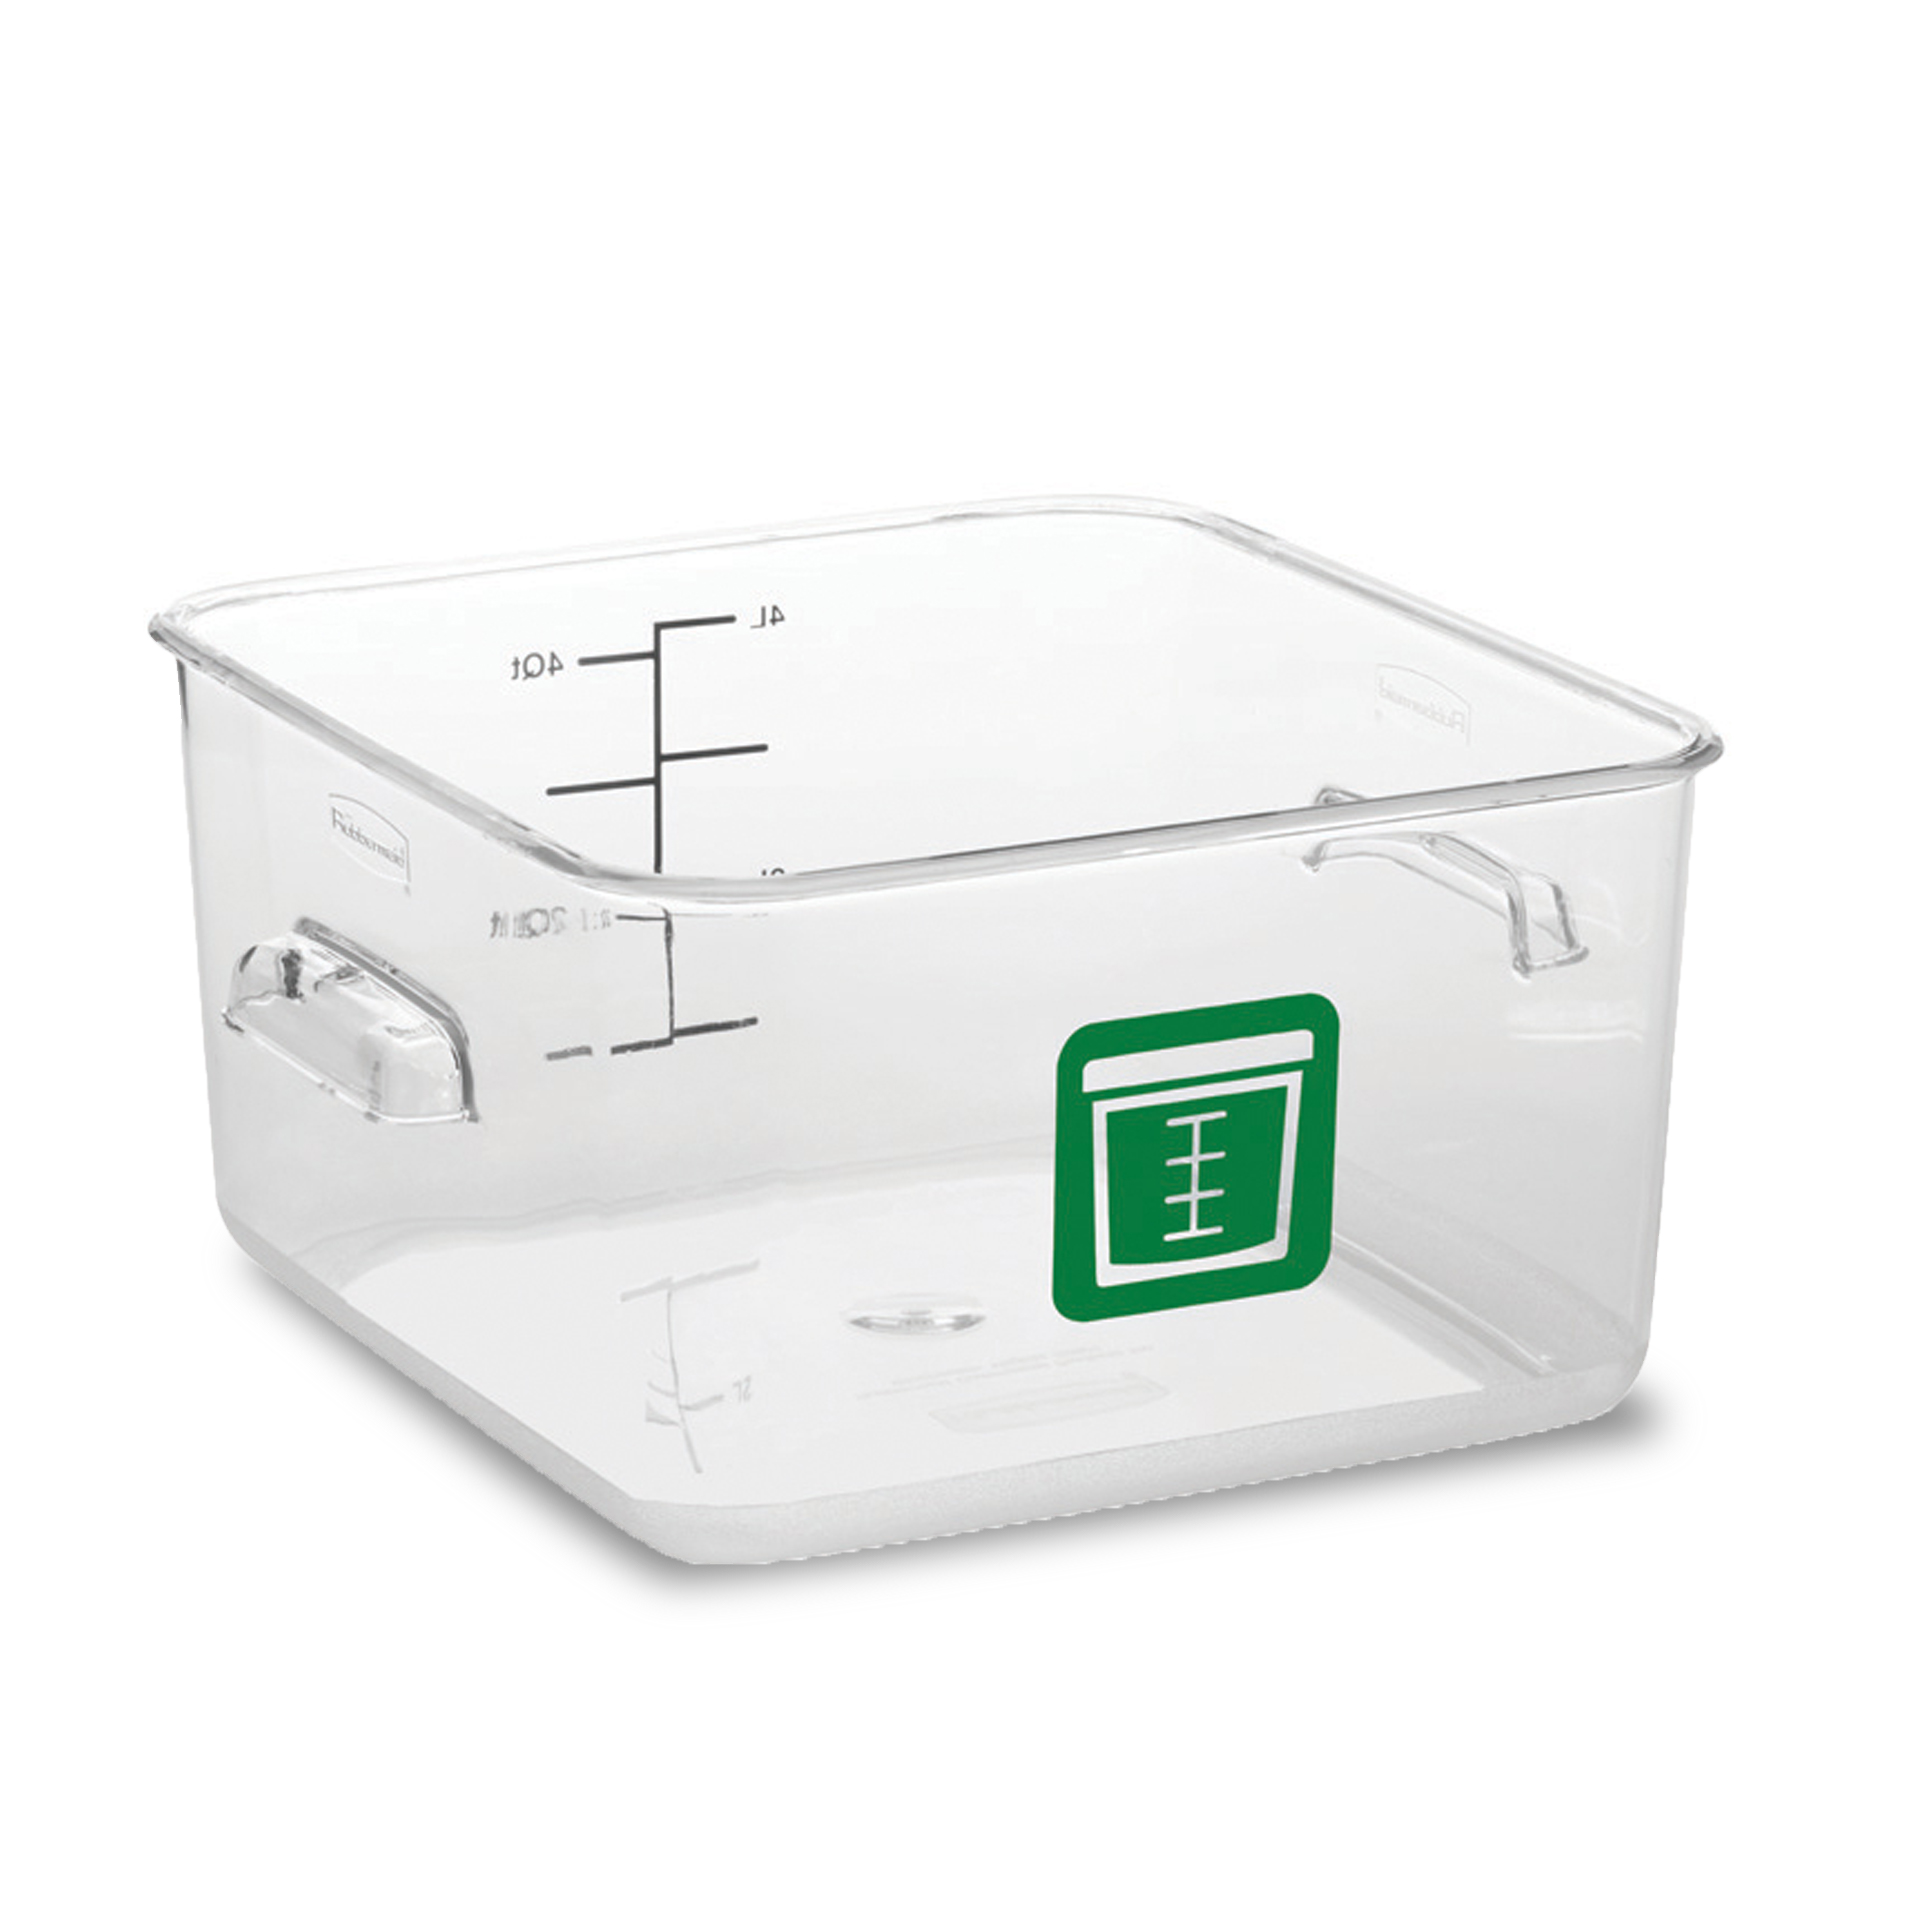 กล่องเก็บวัตถุดิบอาหารสี่เหลี่ยม Color-Coded Square Container Clear ขนาด 4 qt สีเขียว